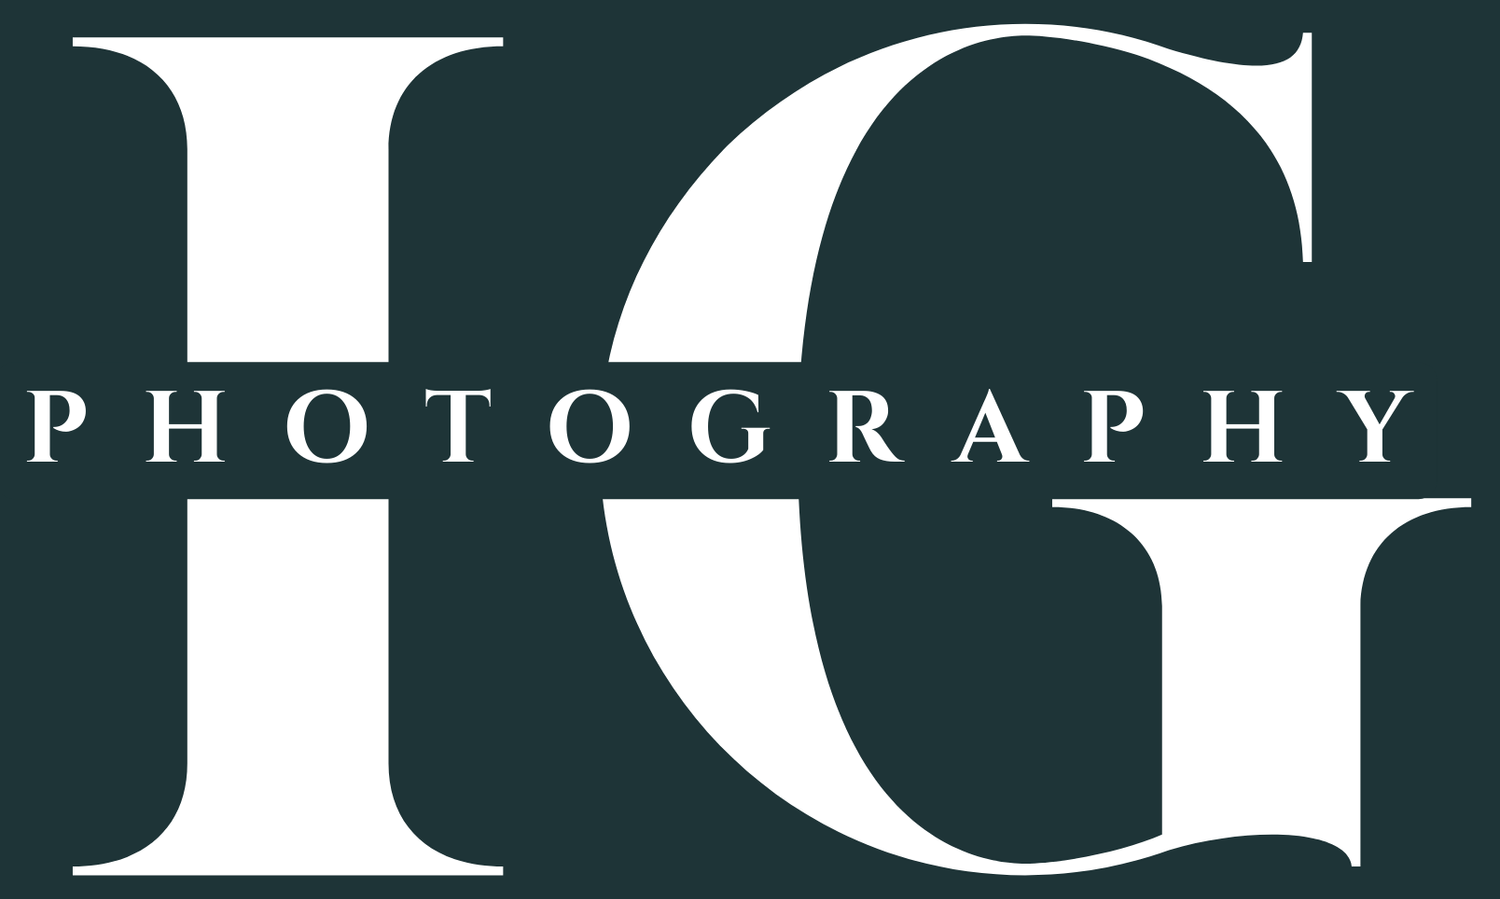 IG Photography